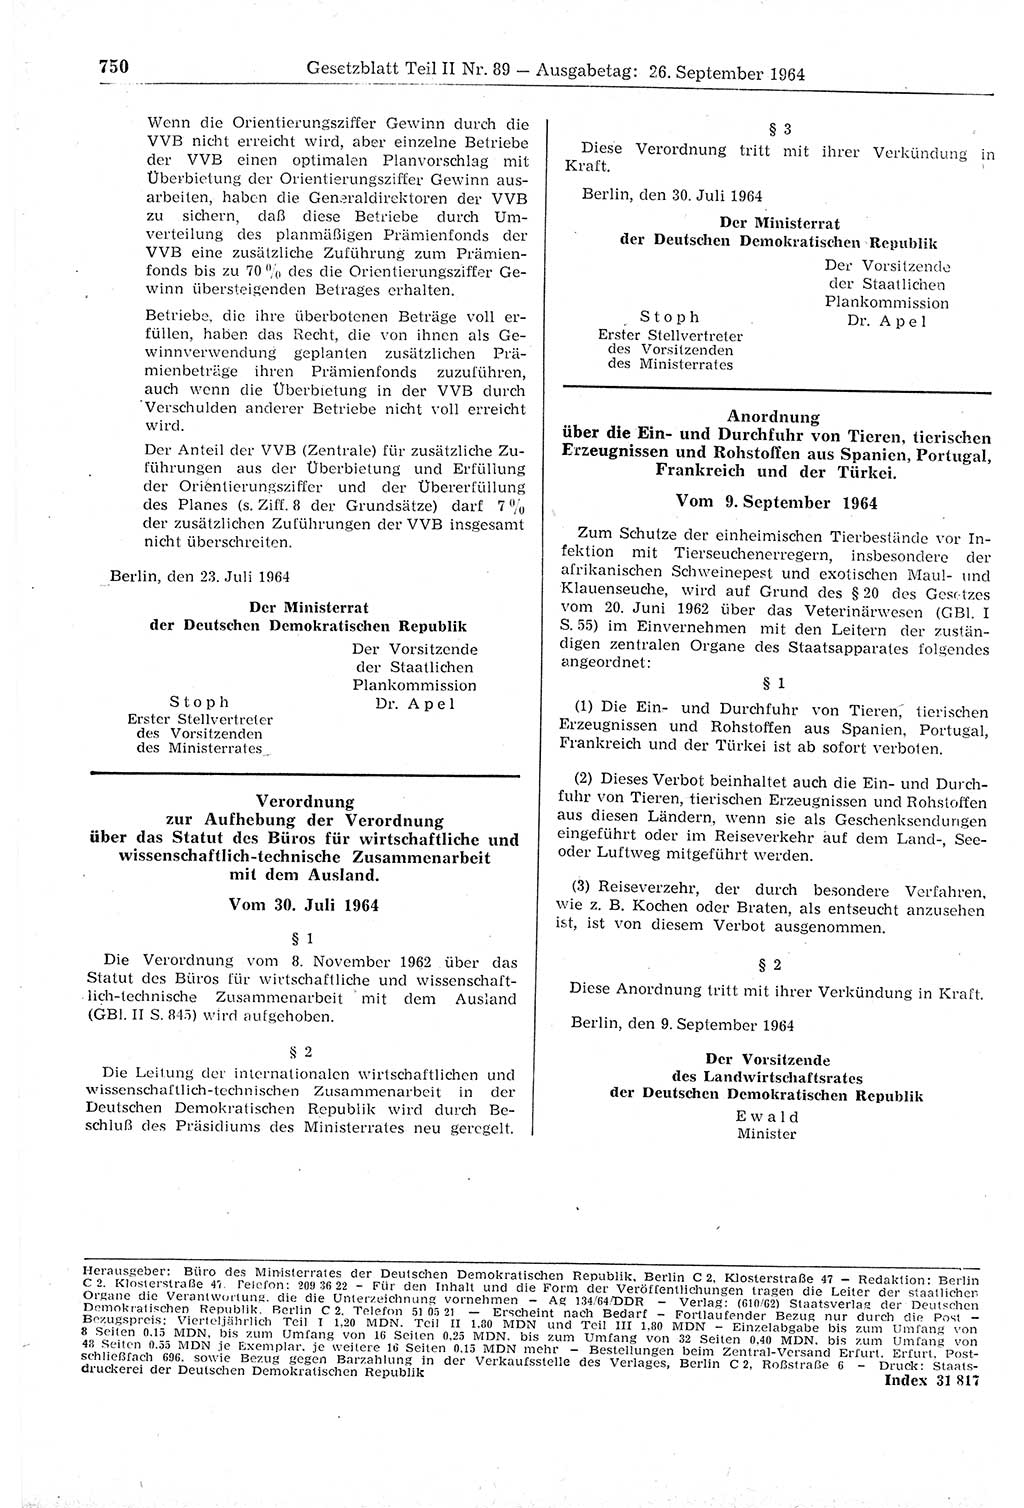 Gesetzblatt (GBl.) der Deutschen Demokratischen Republik (DDR) Teil ⅠⅠ 1964, Seite 750 (GBl. DDR ⅠⅠ 1964, S. 750)